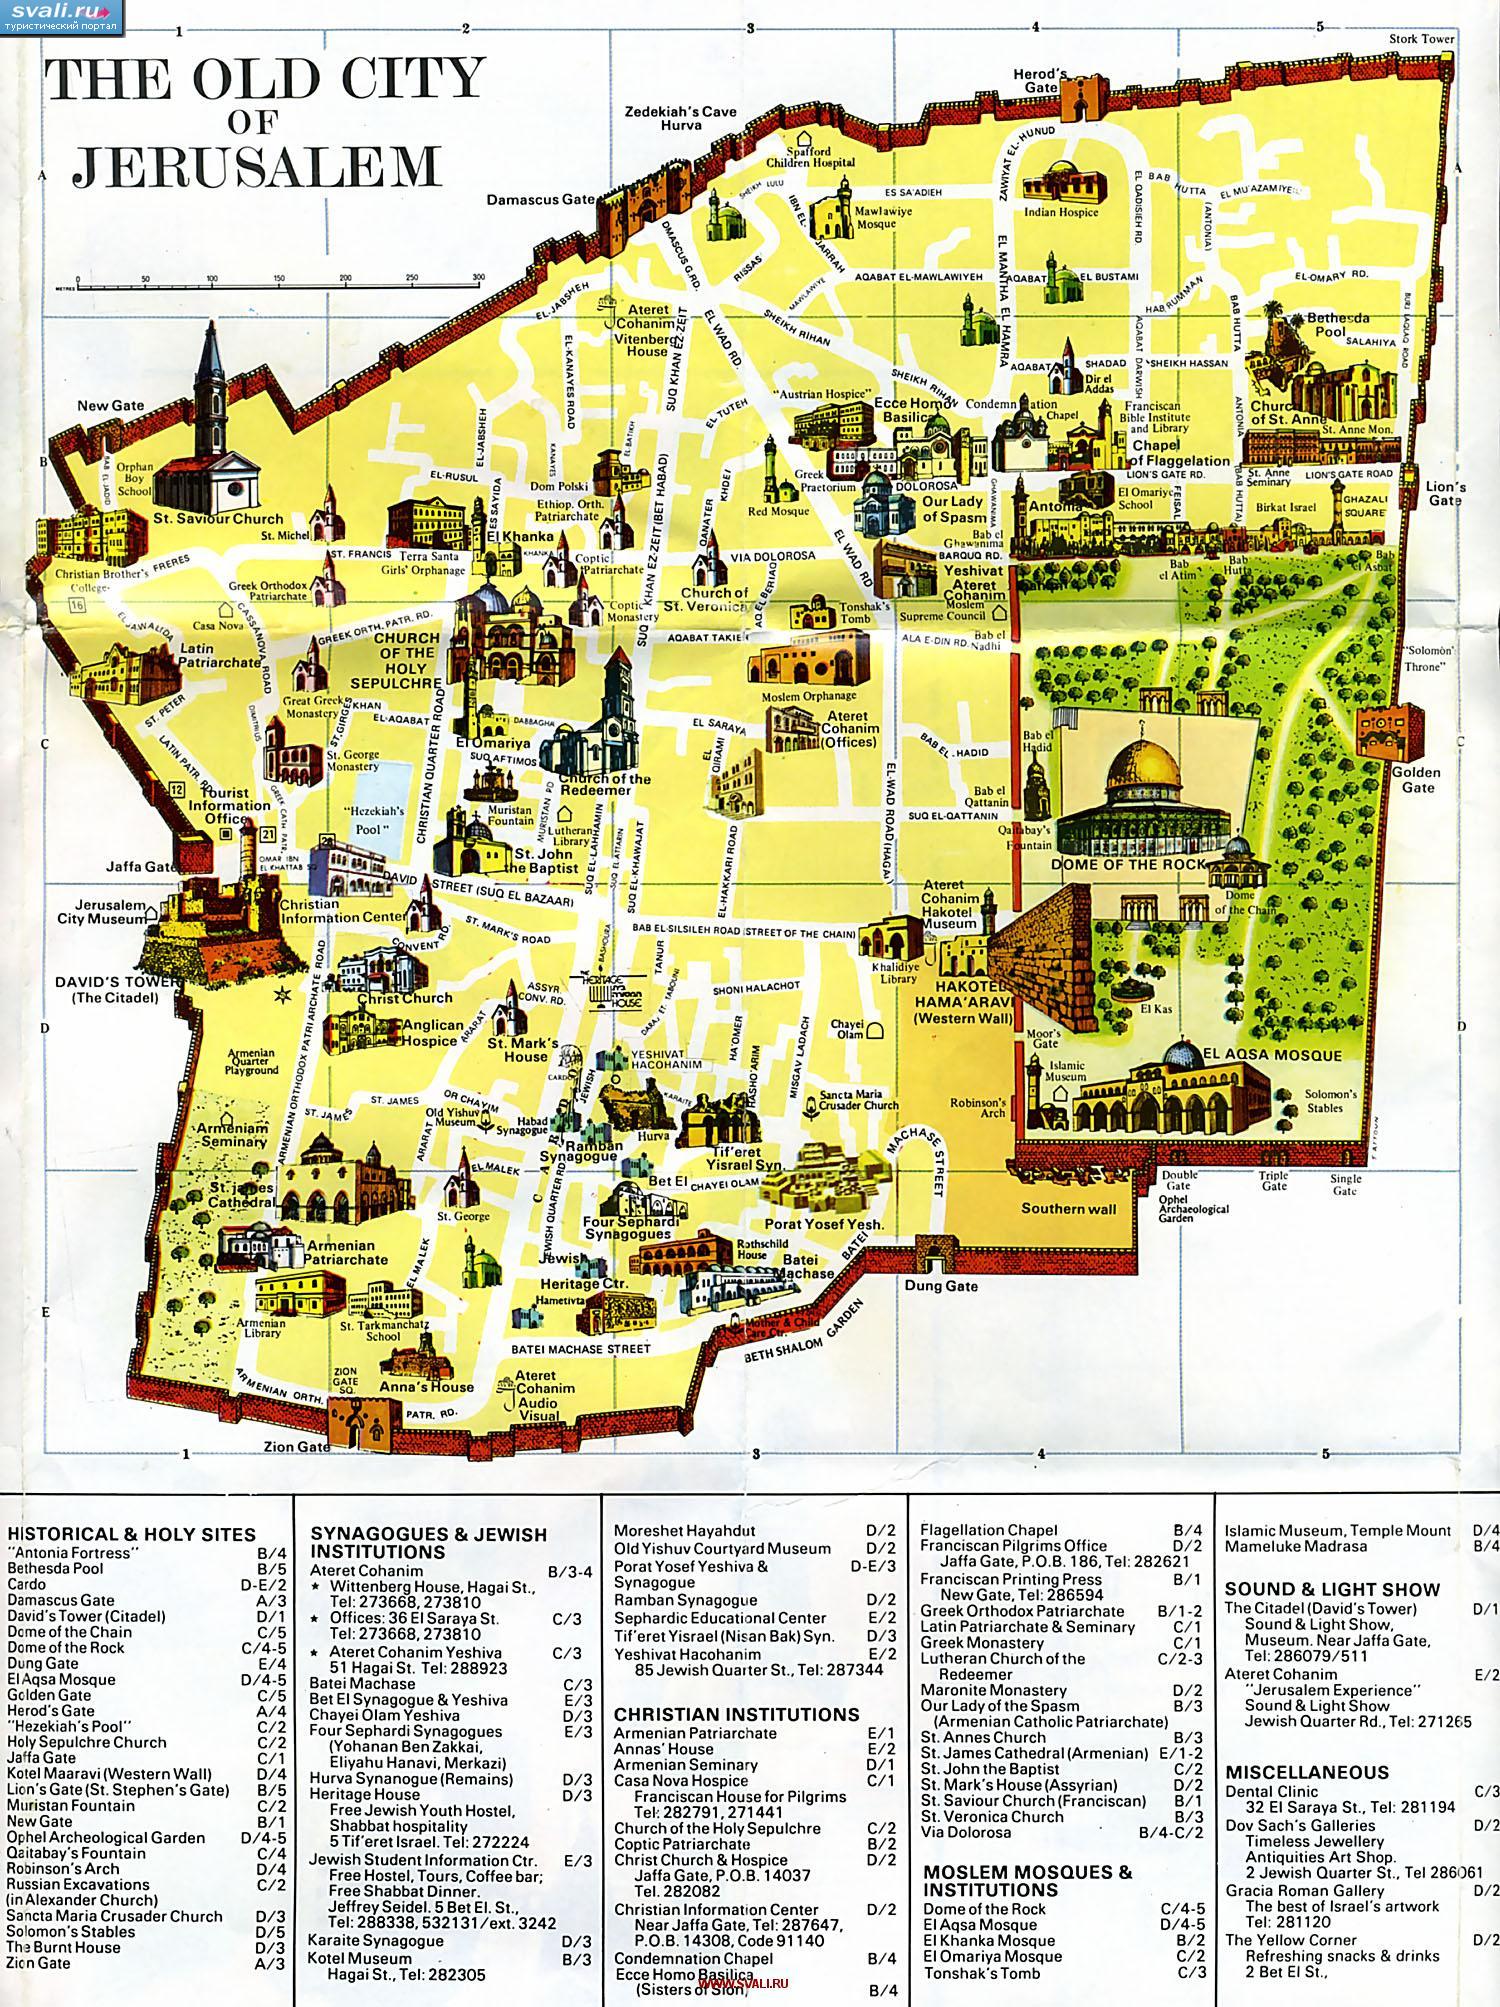 Иерусалим, Старый город, подробная туристическая карта с указанием достопримечательностей, Израиль (англ.)